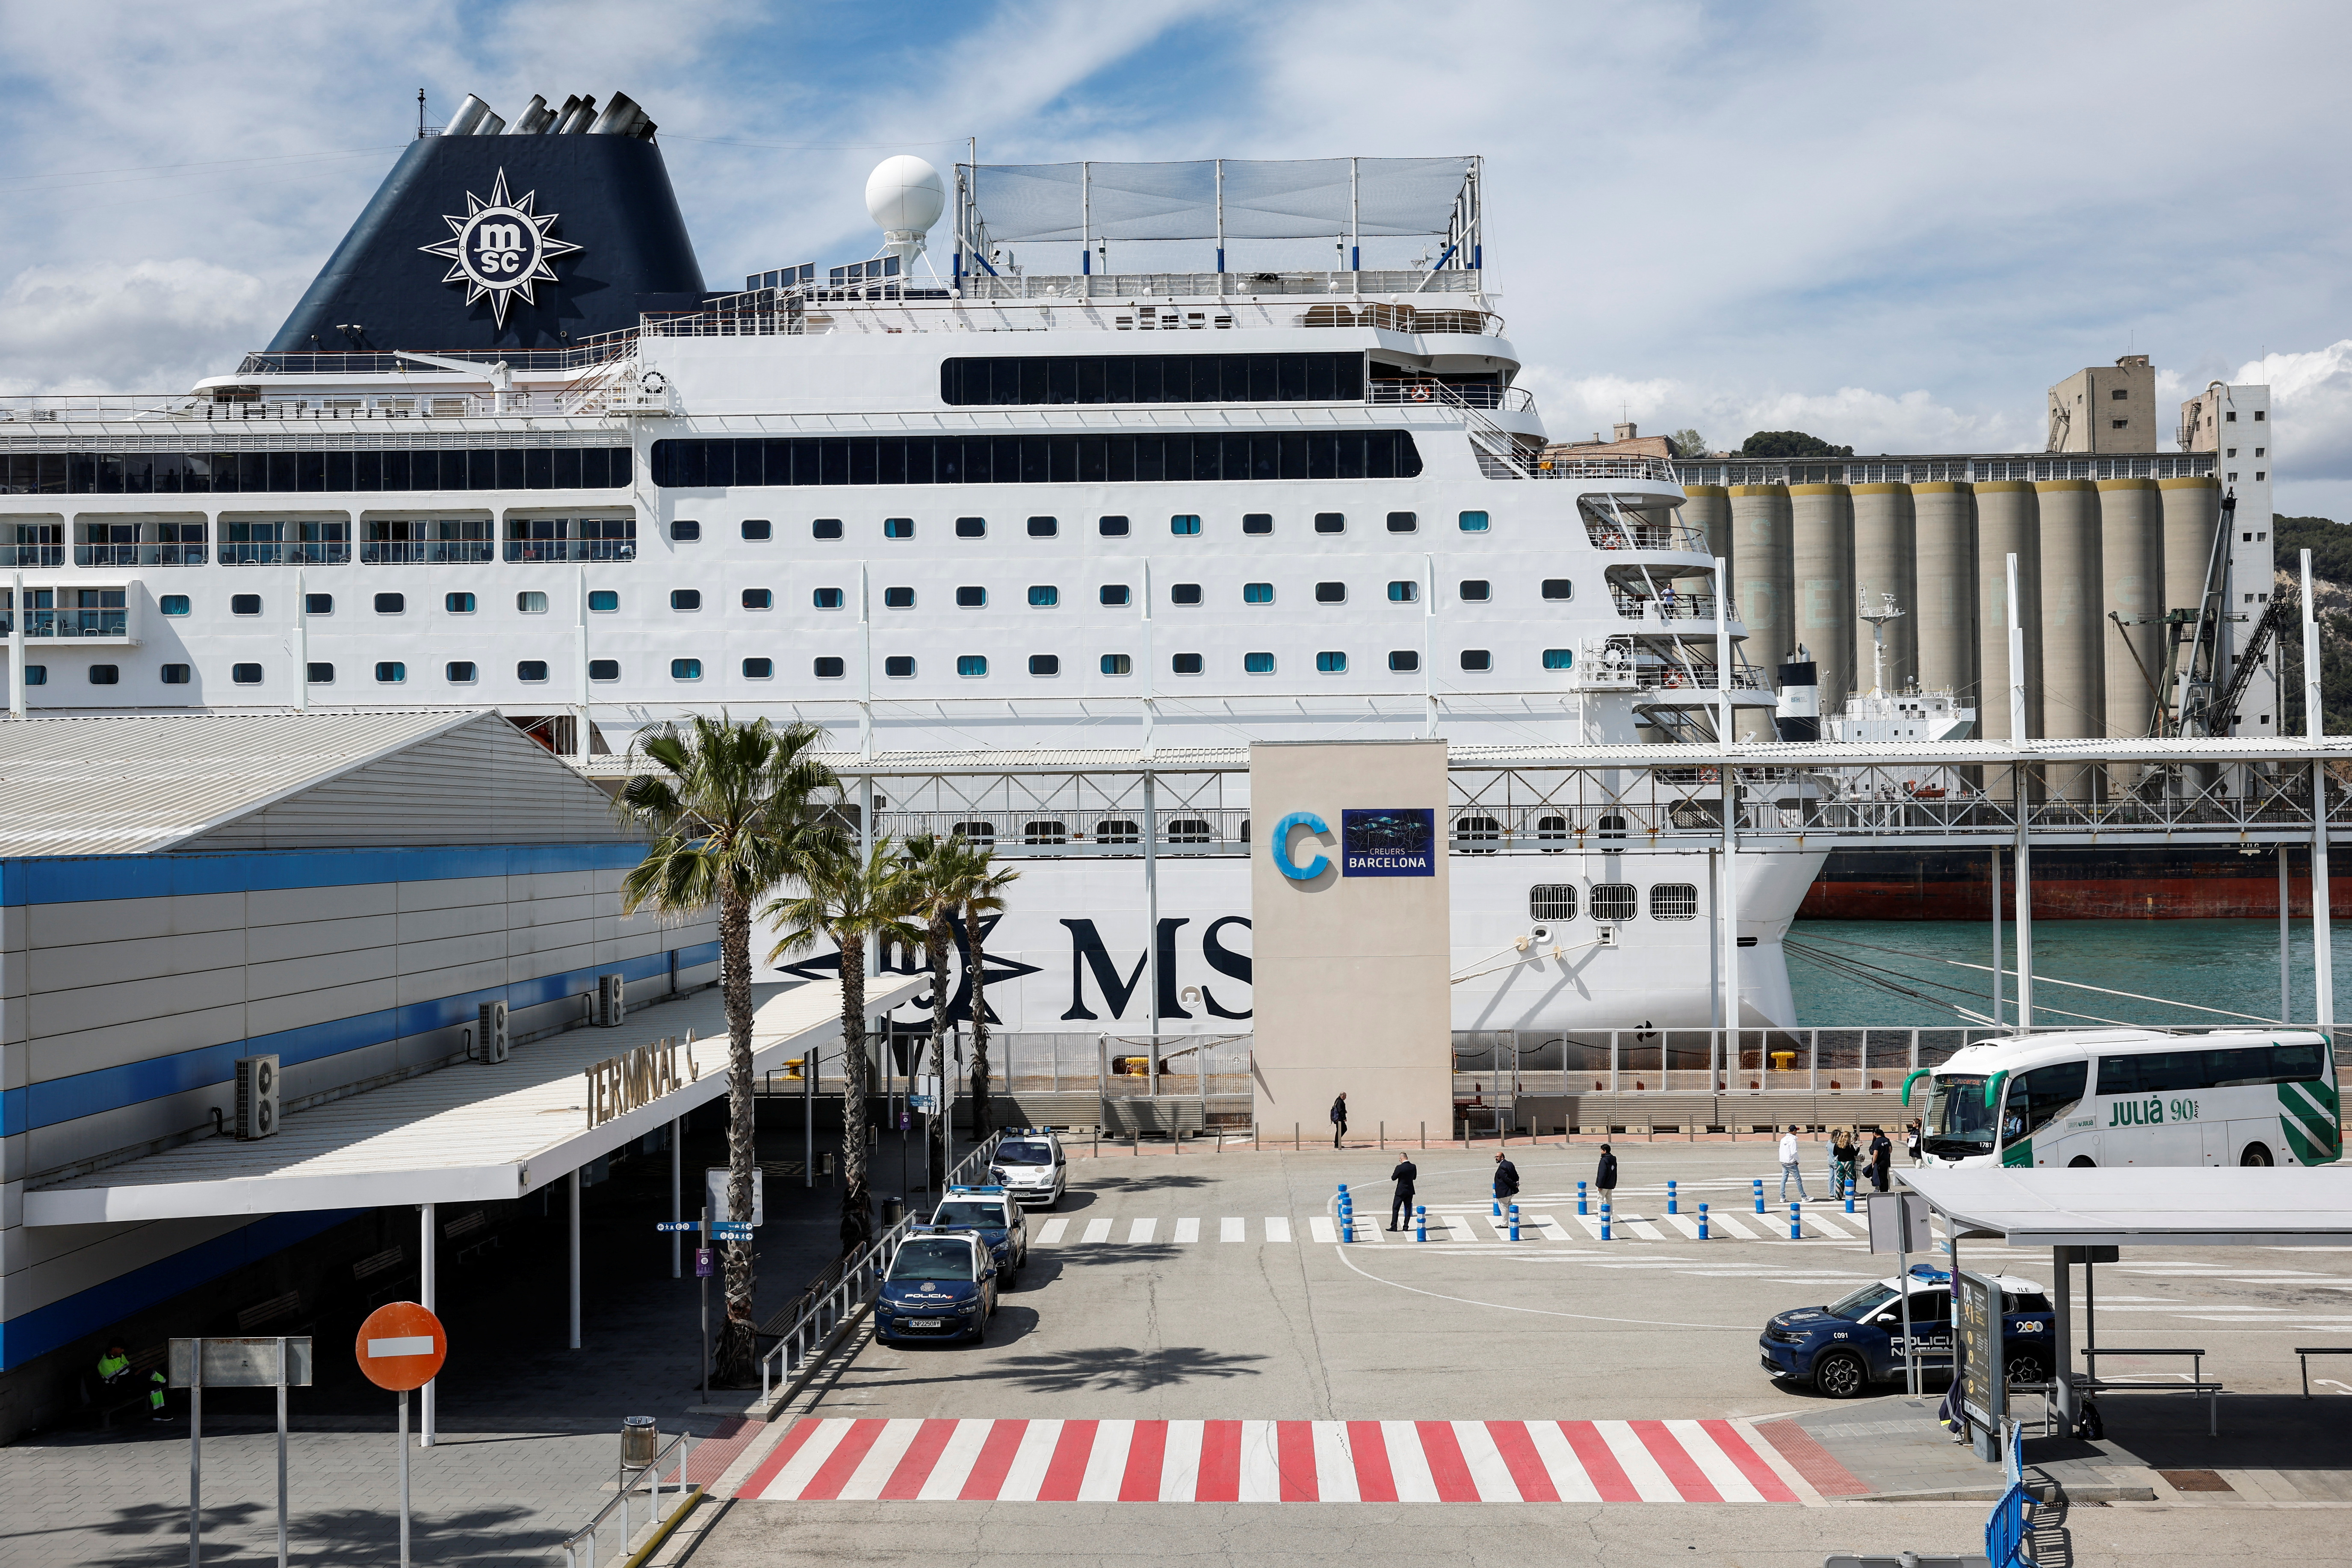 MSC Armonia docks in Barcelona's Port